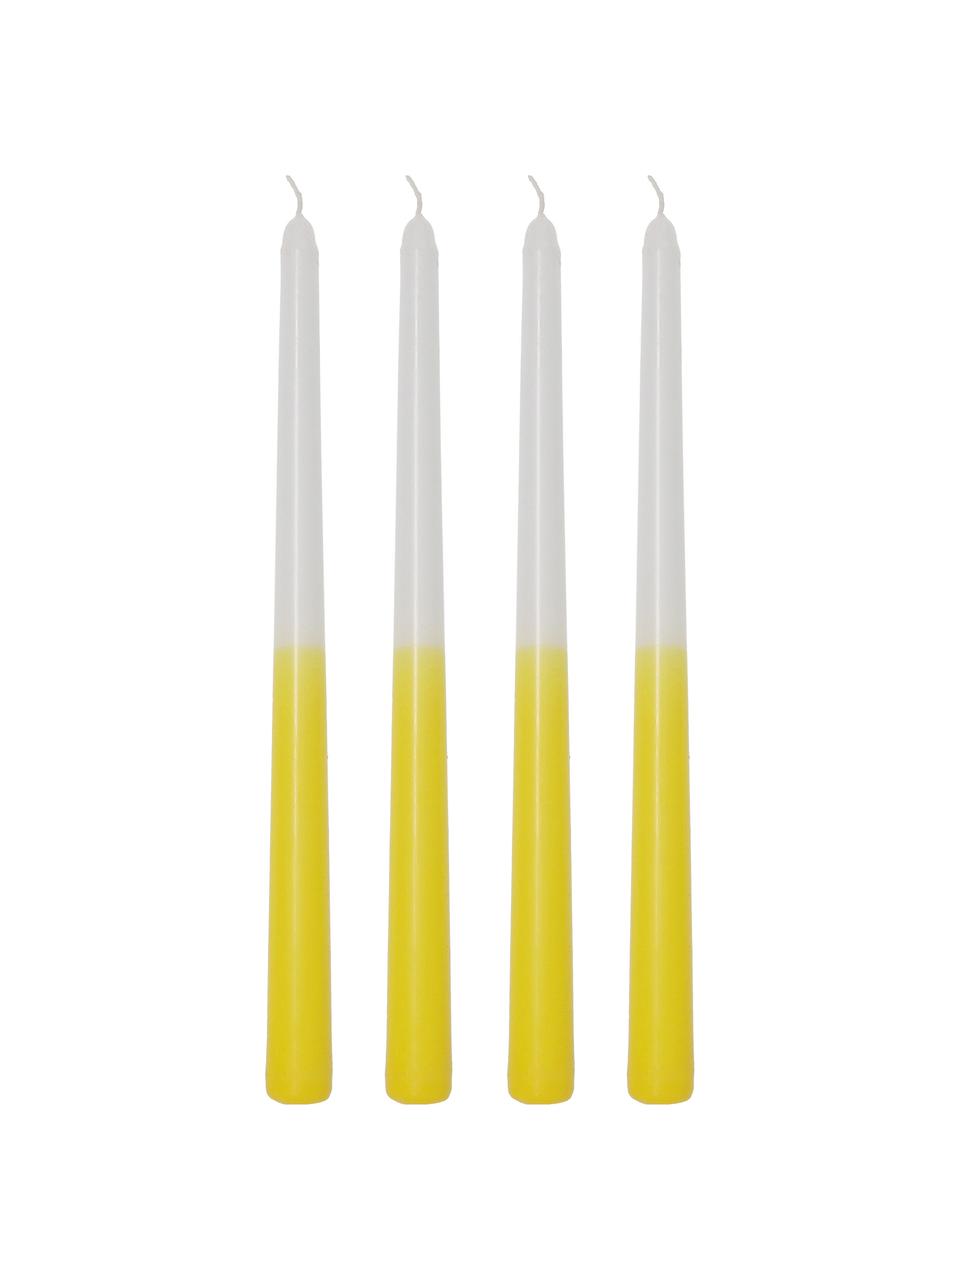 Dlhá sviečka Dubli, 4 ks, Vosk, Žltá, biela, Ø 2 x V 31 cm